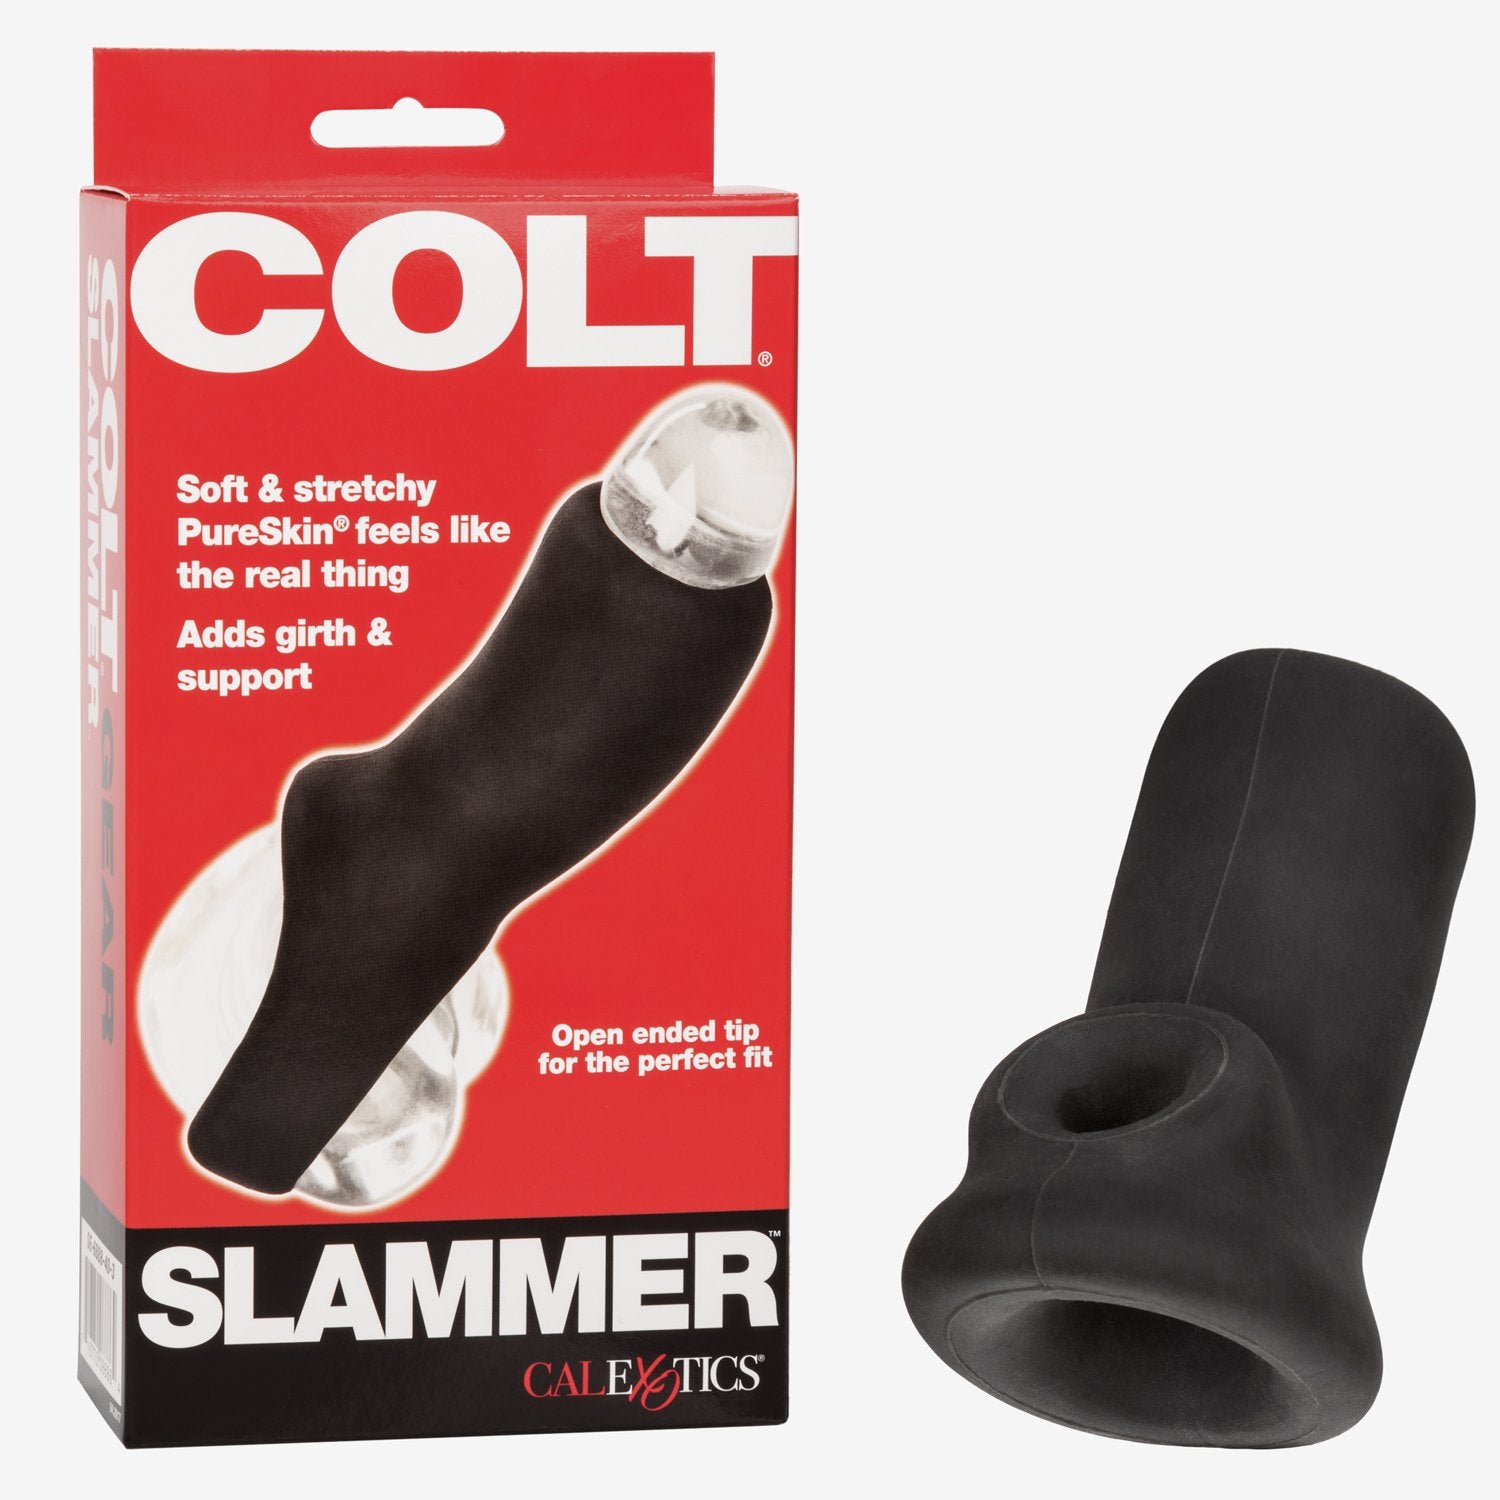 COLT® Slammer pic